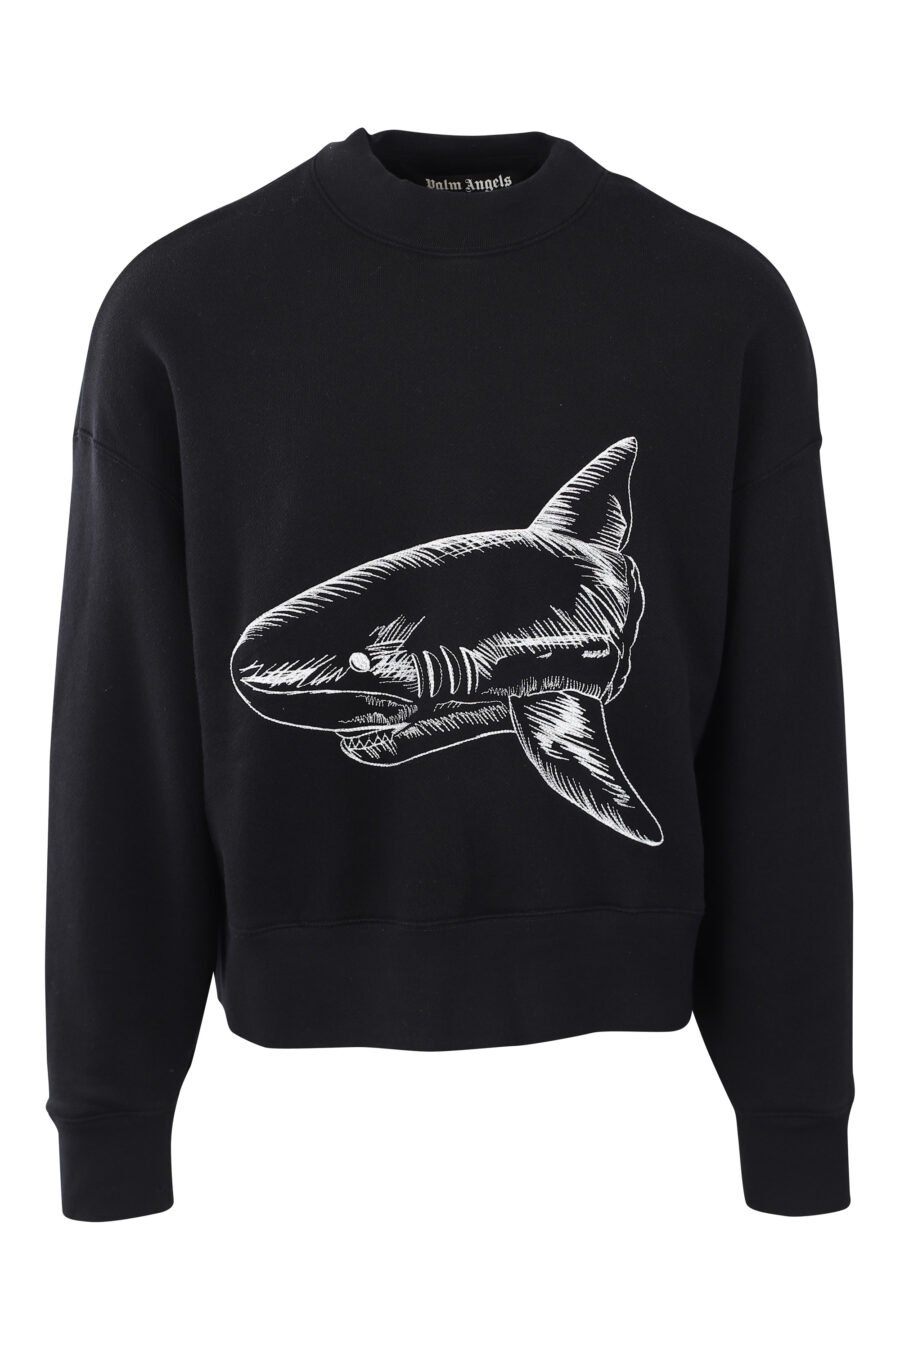 Sweat noir avec logo et requin brodés en blanc dans le dos - IMG 2565